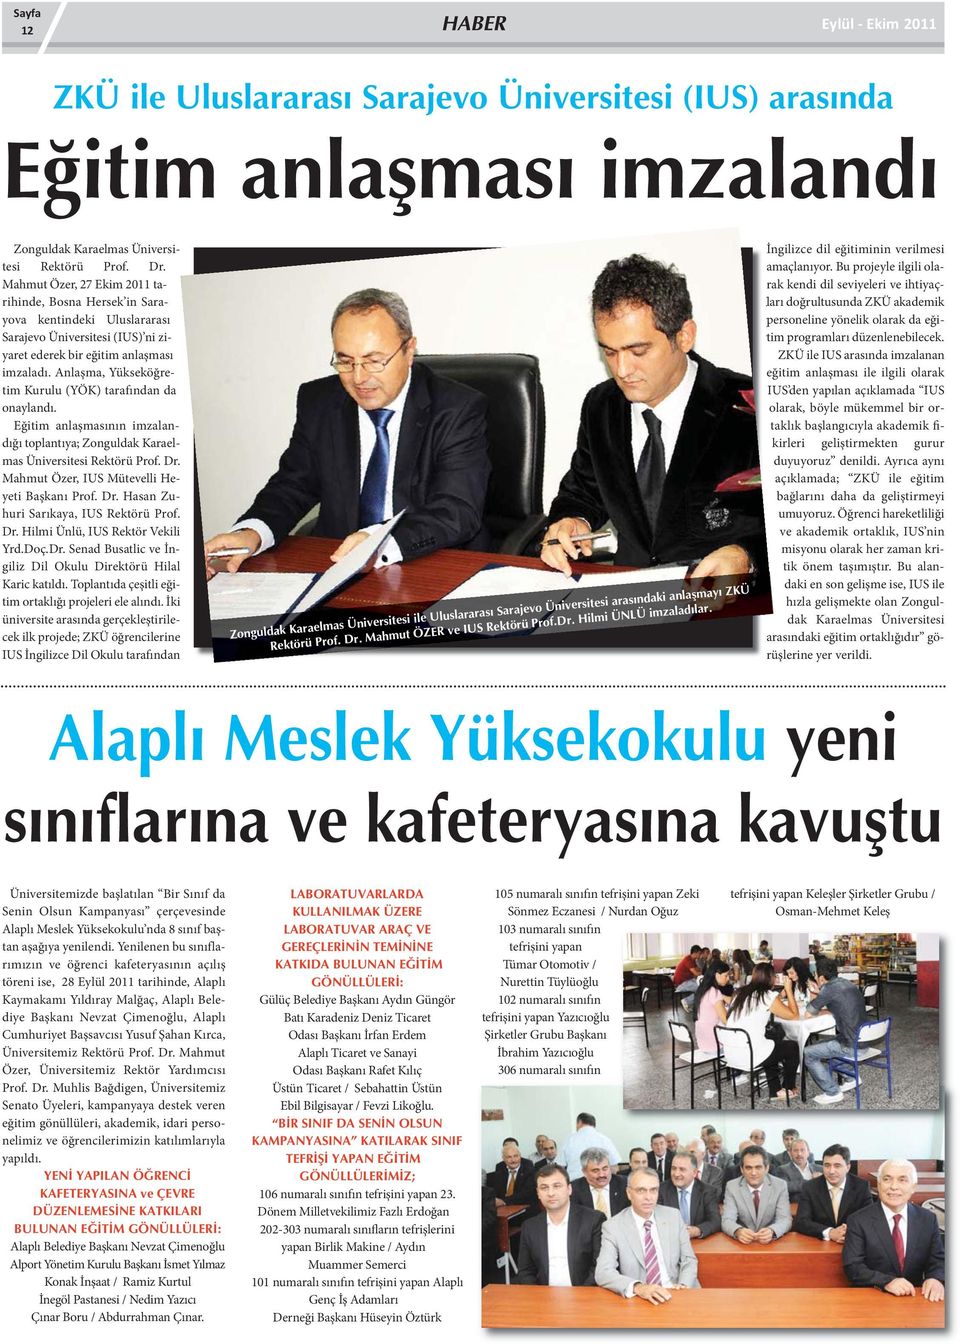 Anlaşma, Yükseköğretim Kurulu (YÖK) tarafından da onaylandı. Eğitim anlaşmasının imzalandığı toplantıya; Zonguldak Karaelmas Üniversitesi Rektörü Prof. Dr.